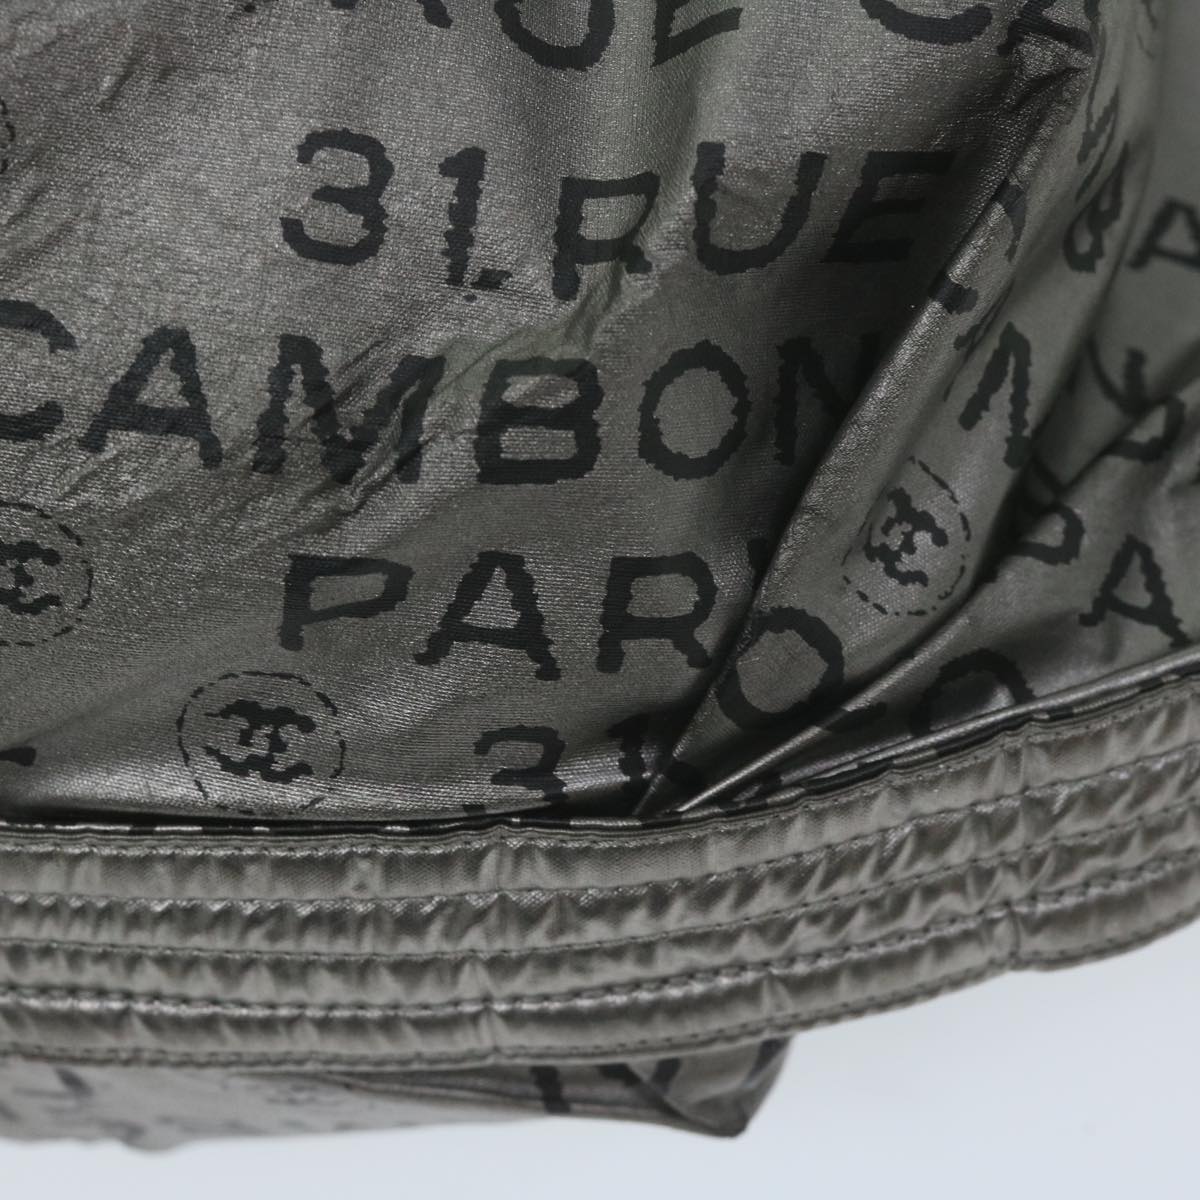 CHANEL Unlimited Shoulder Bag Nylon Silver CC Auth yb449